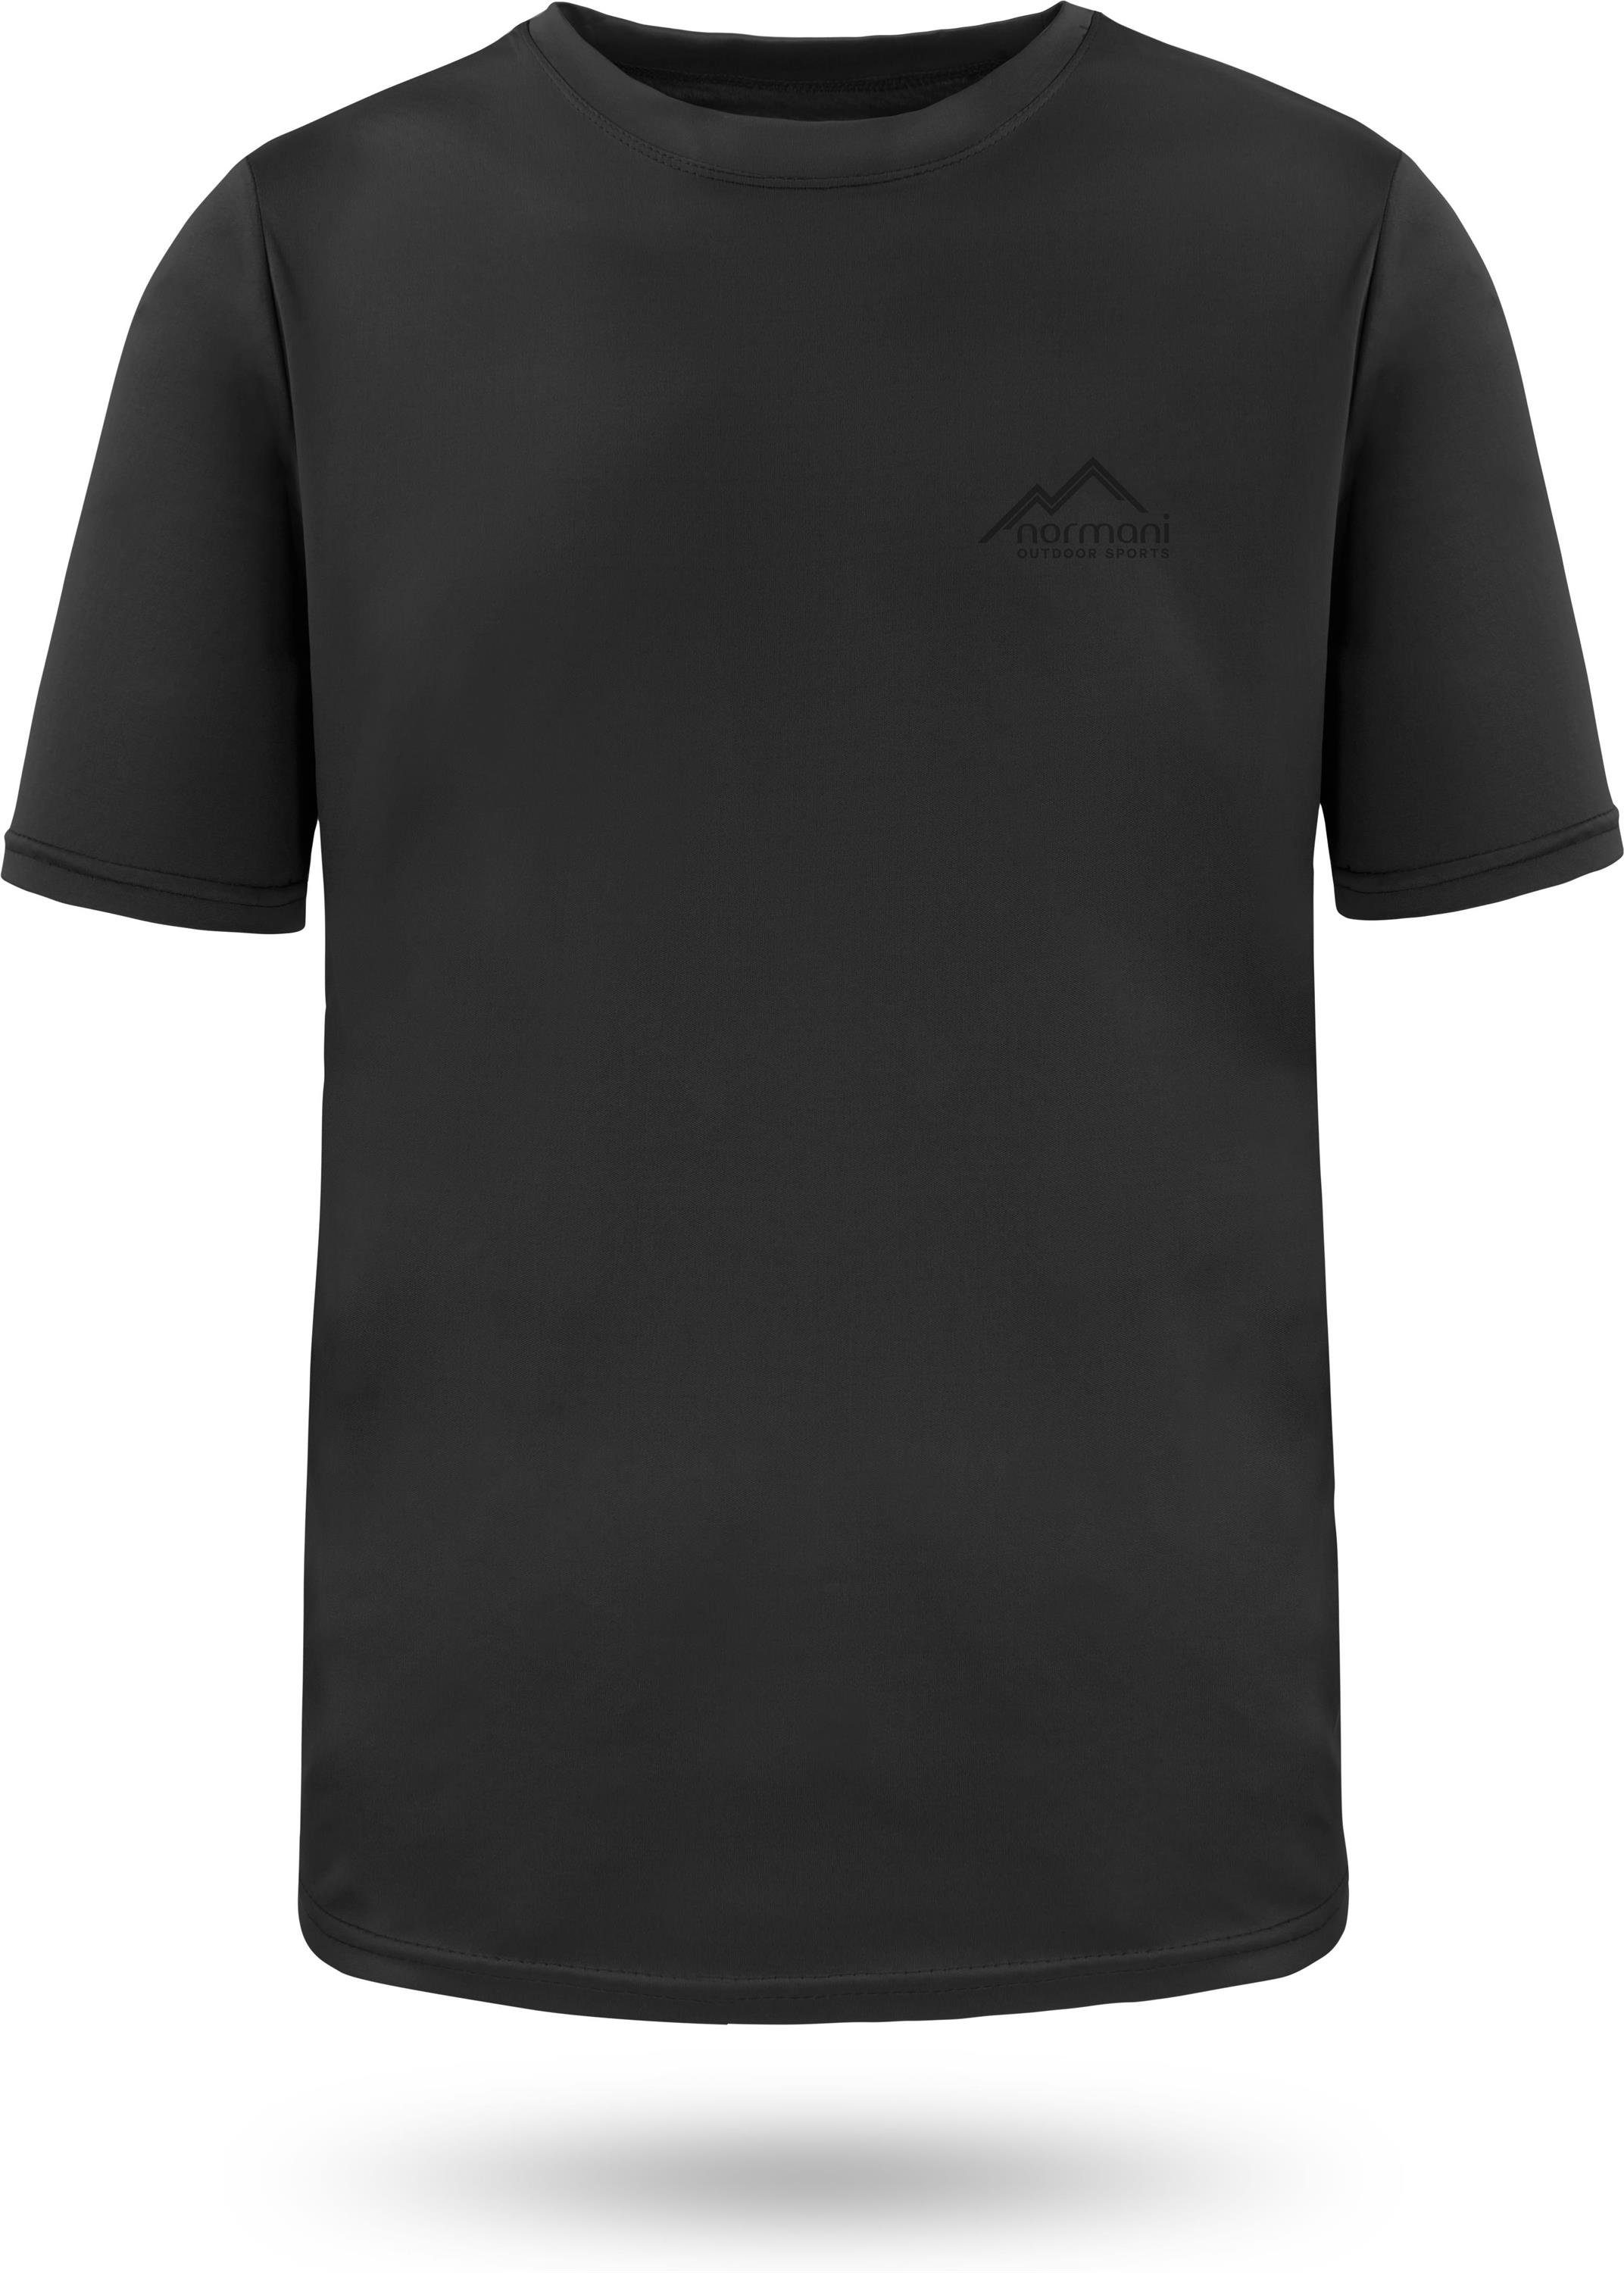 normani Funktionsshirt Herren T-Shirt Agra Kurzarm Sportswear Funktions-Sport Fitness Shirt mt Cooling-Material Schwarz